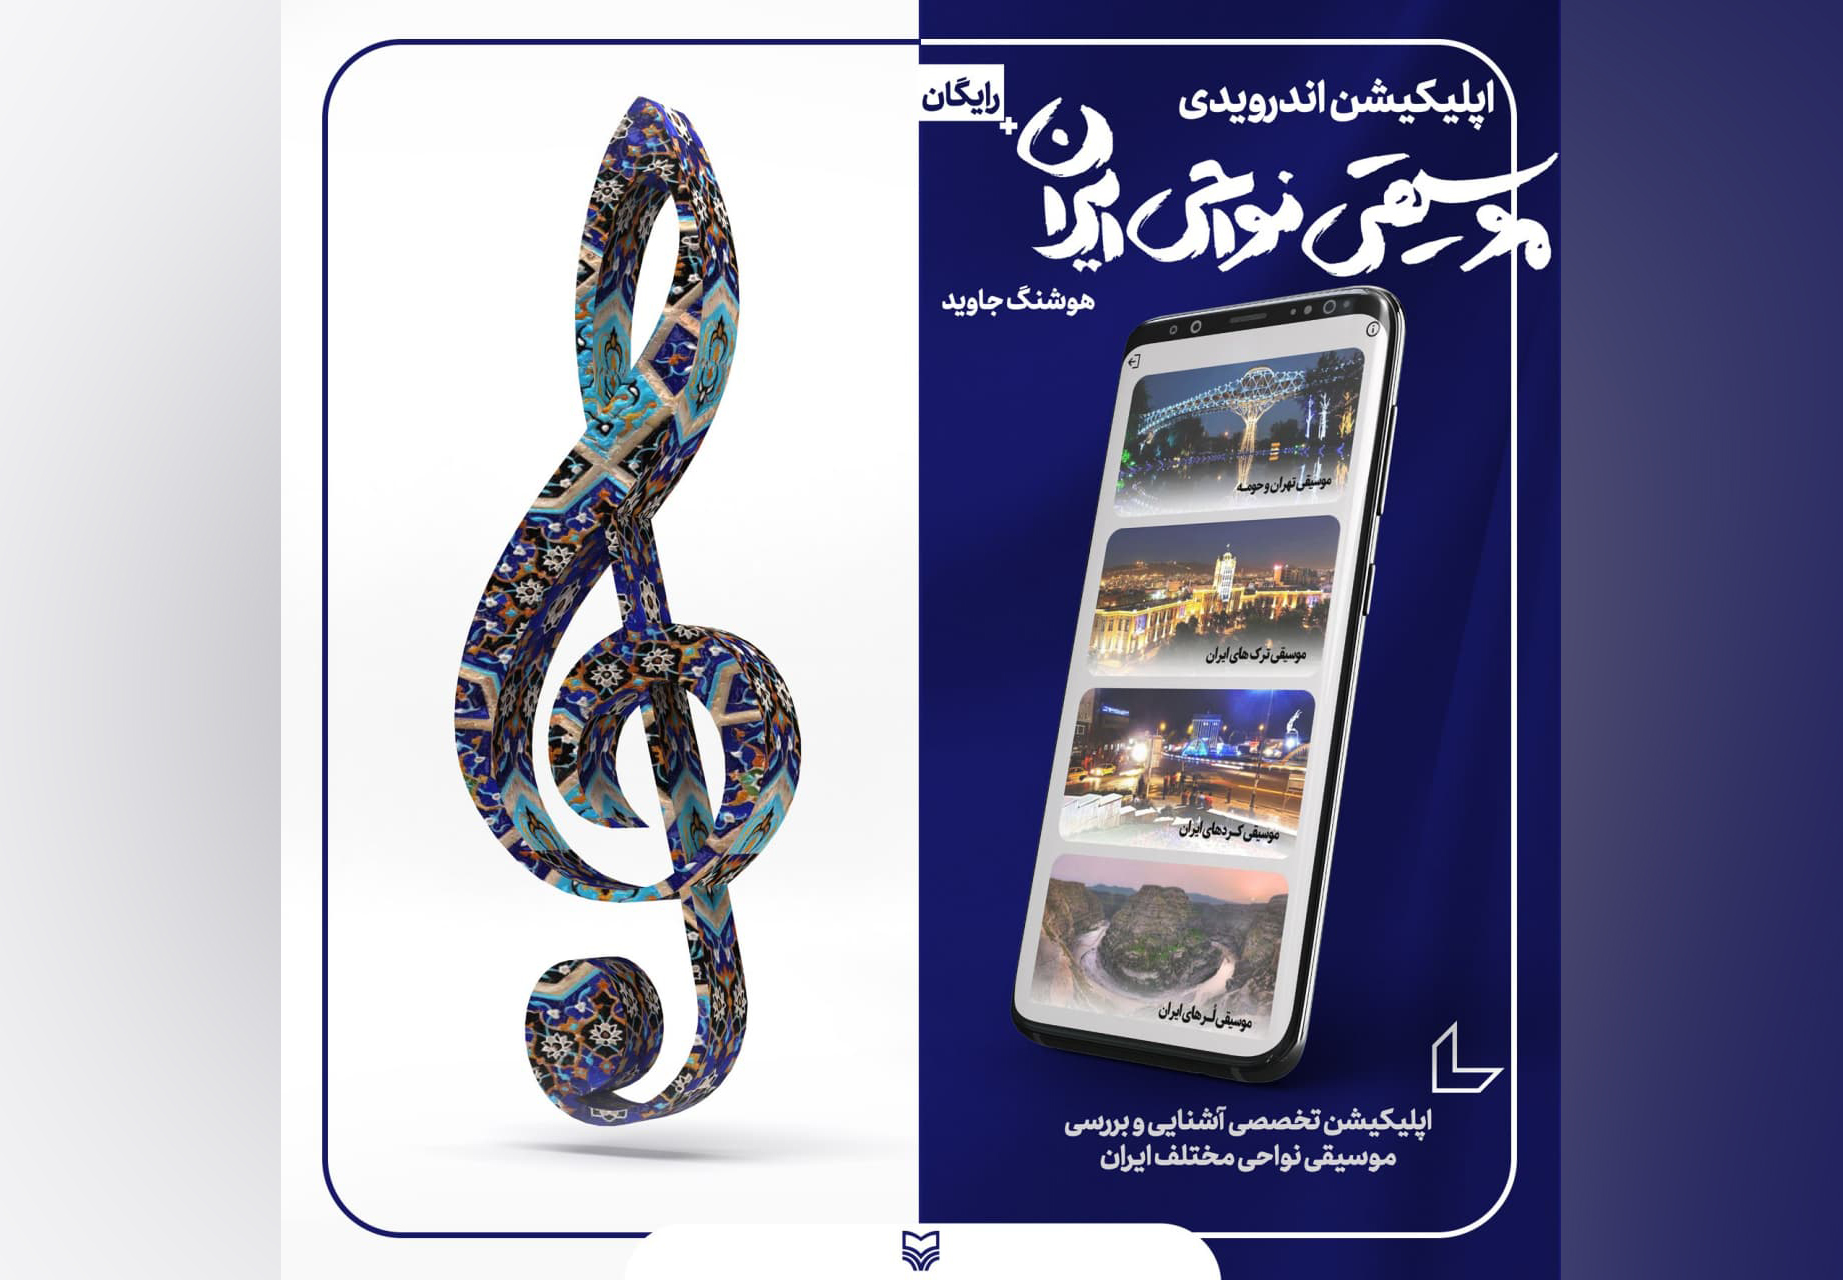 انتشارات سوره مهر اپلیکیشن اندرویدی «آشنایی با موسیقی نواحی ایران» را عرضه کرد